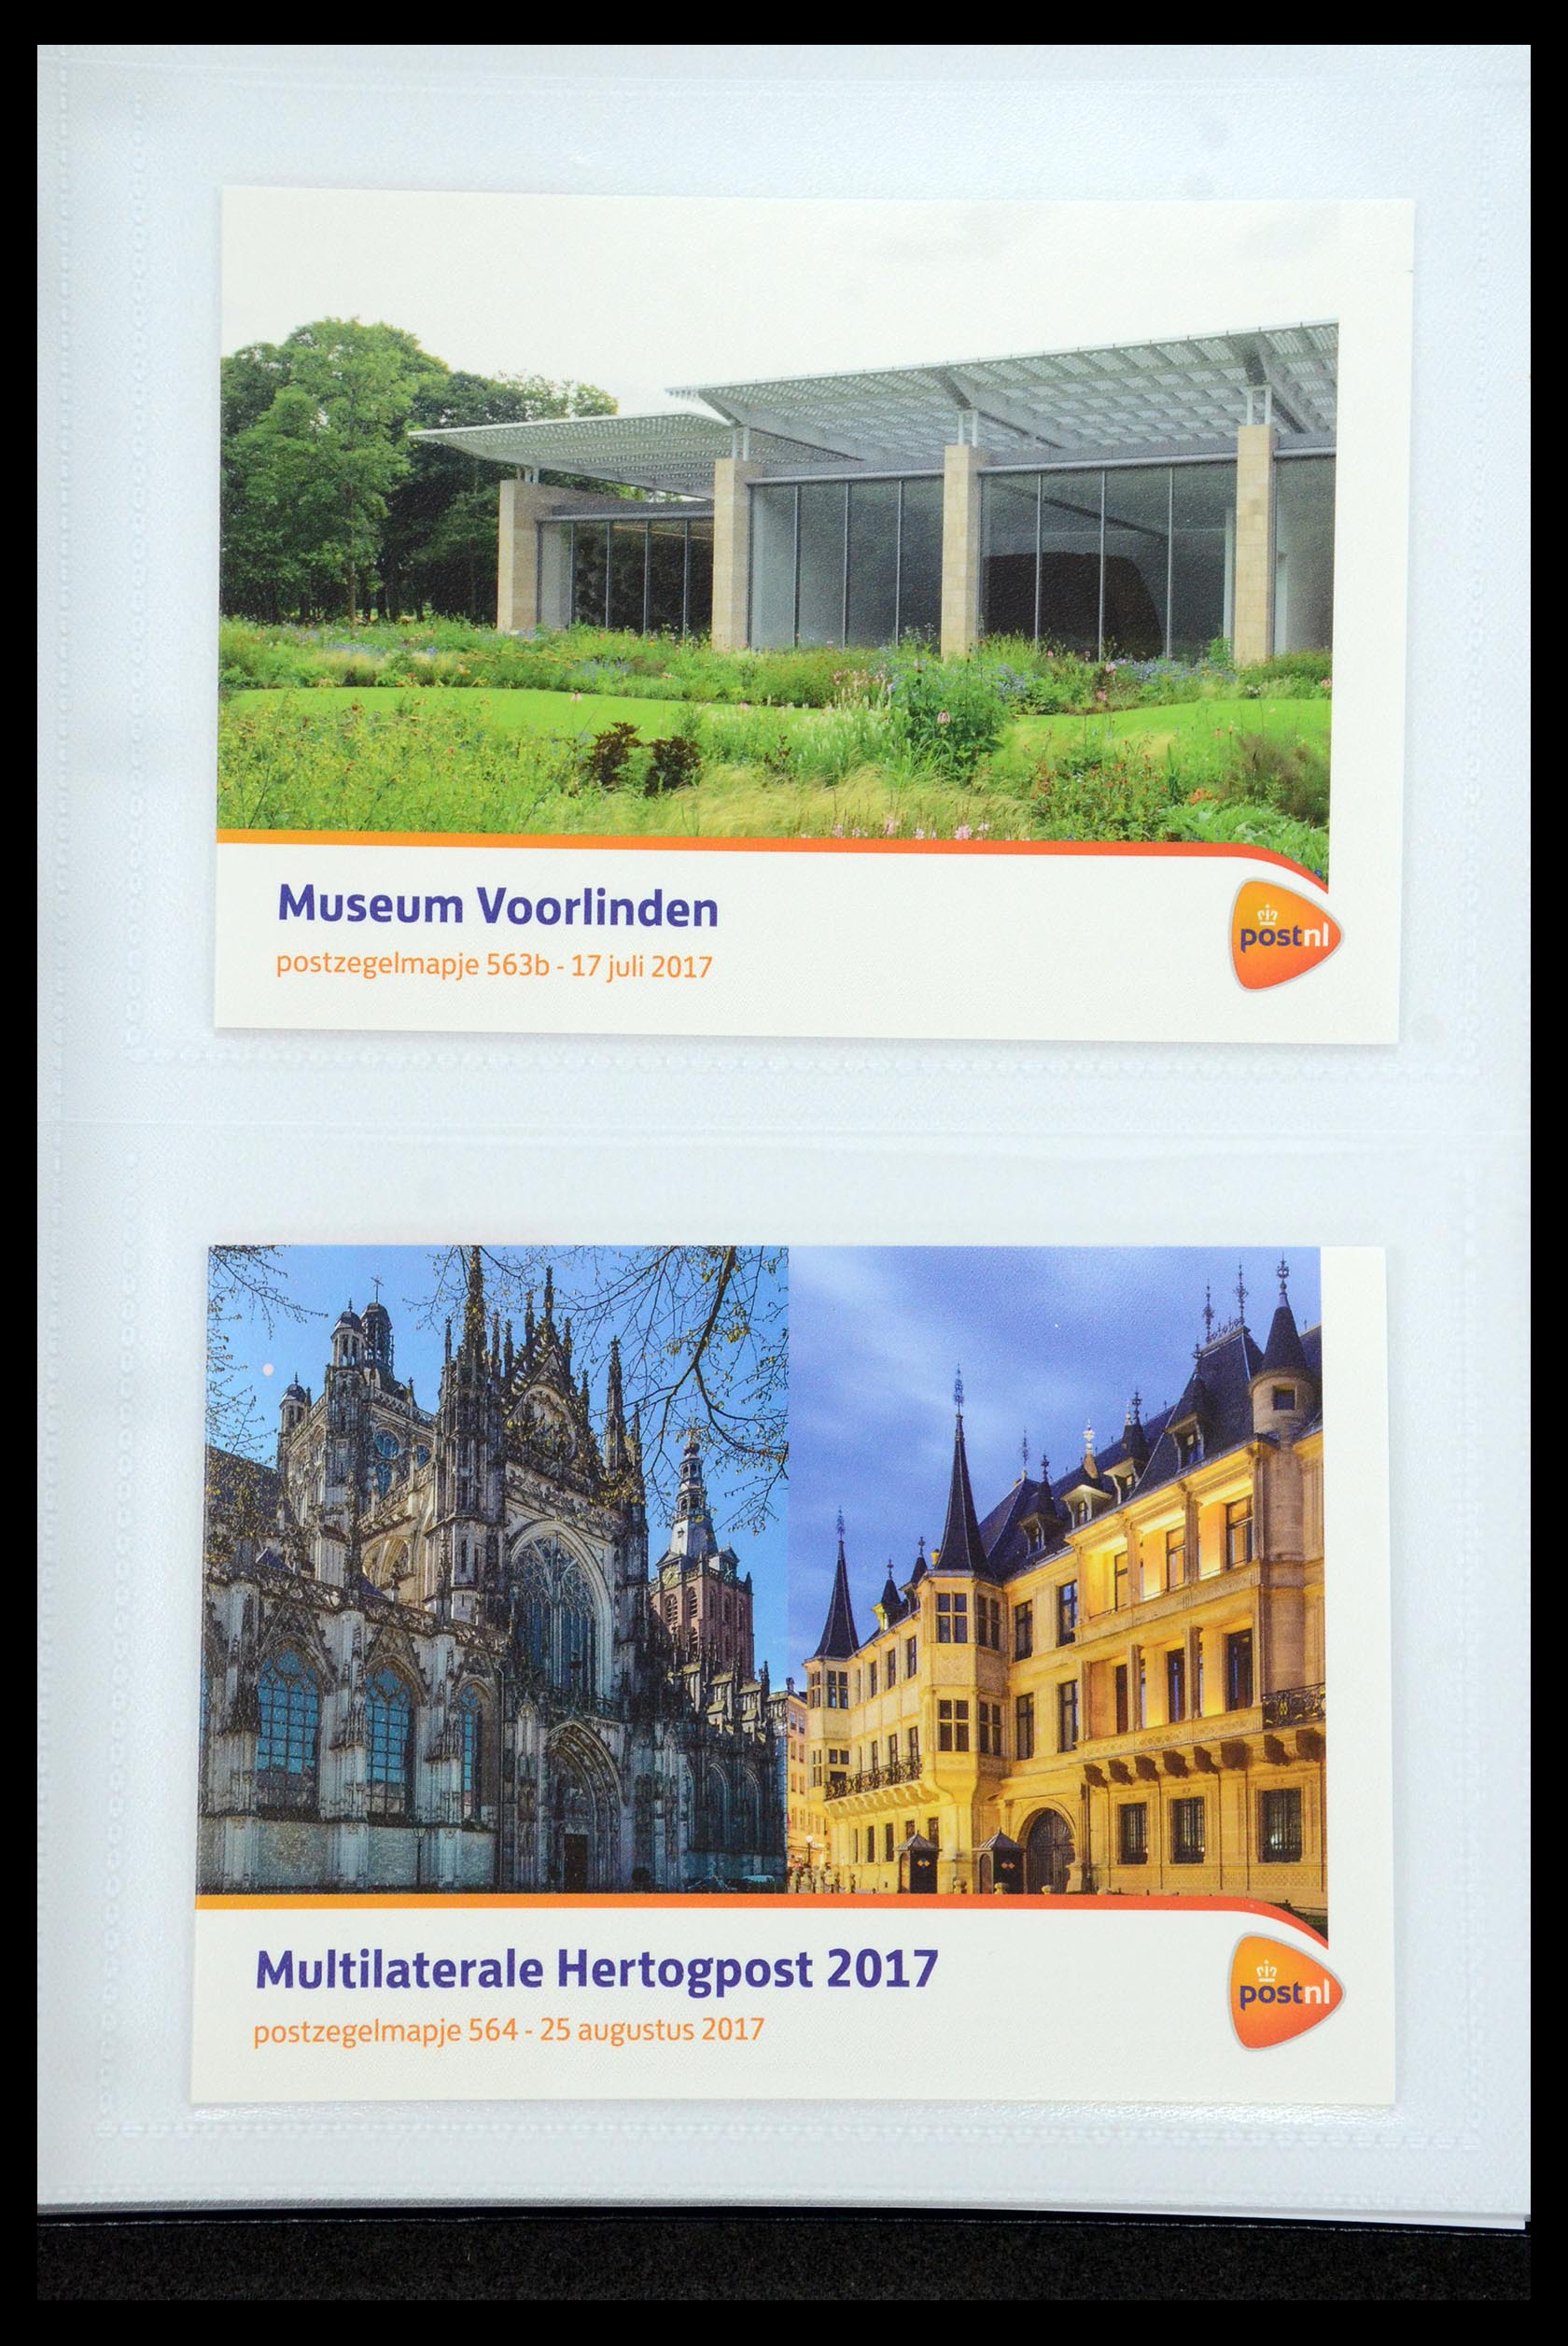 35947 338 - Stamp Collection 35947 Netherlands PTT presentation packs 1982-2019!